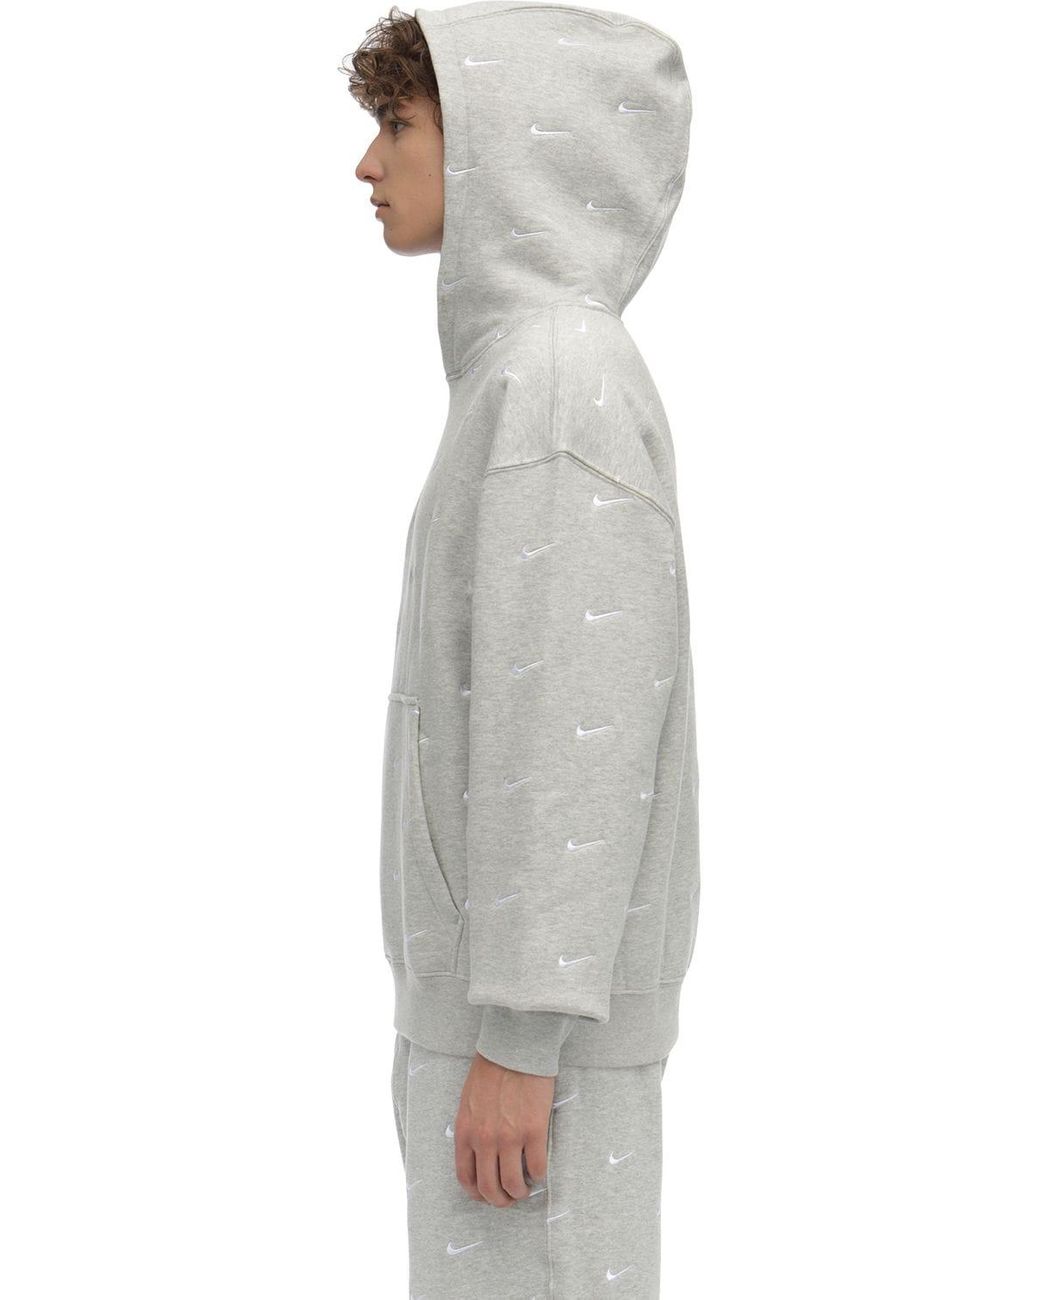 Nike Nrg Swoosh Logo Sweatshirt Hoodie in Gray for Men | Lyst